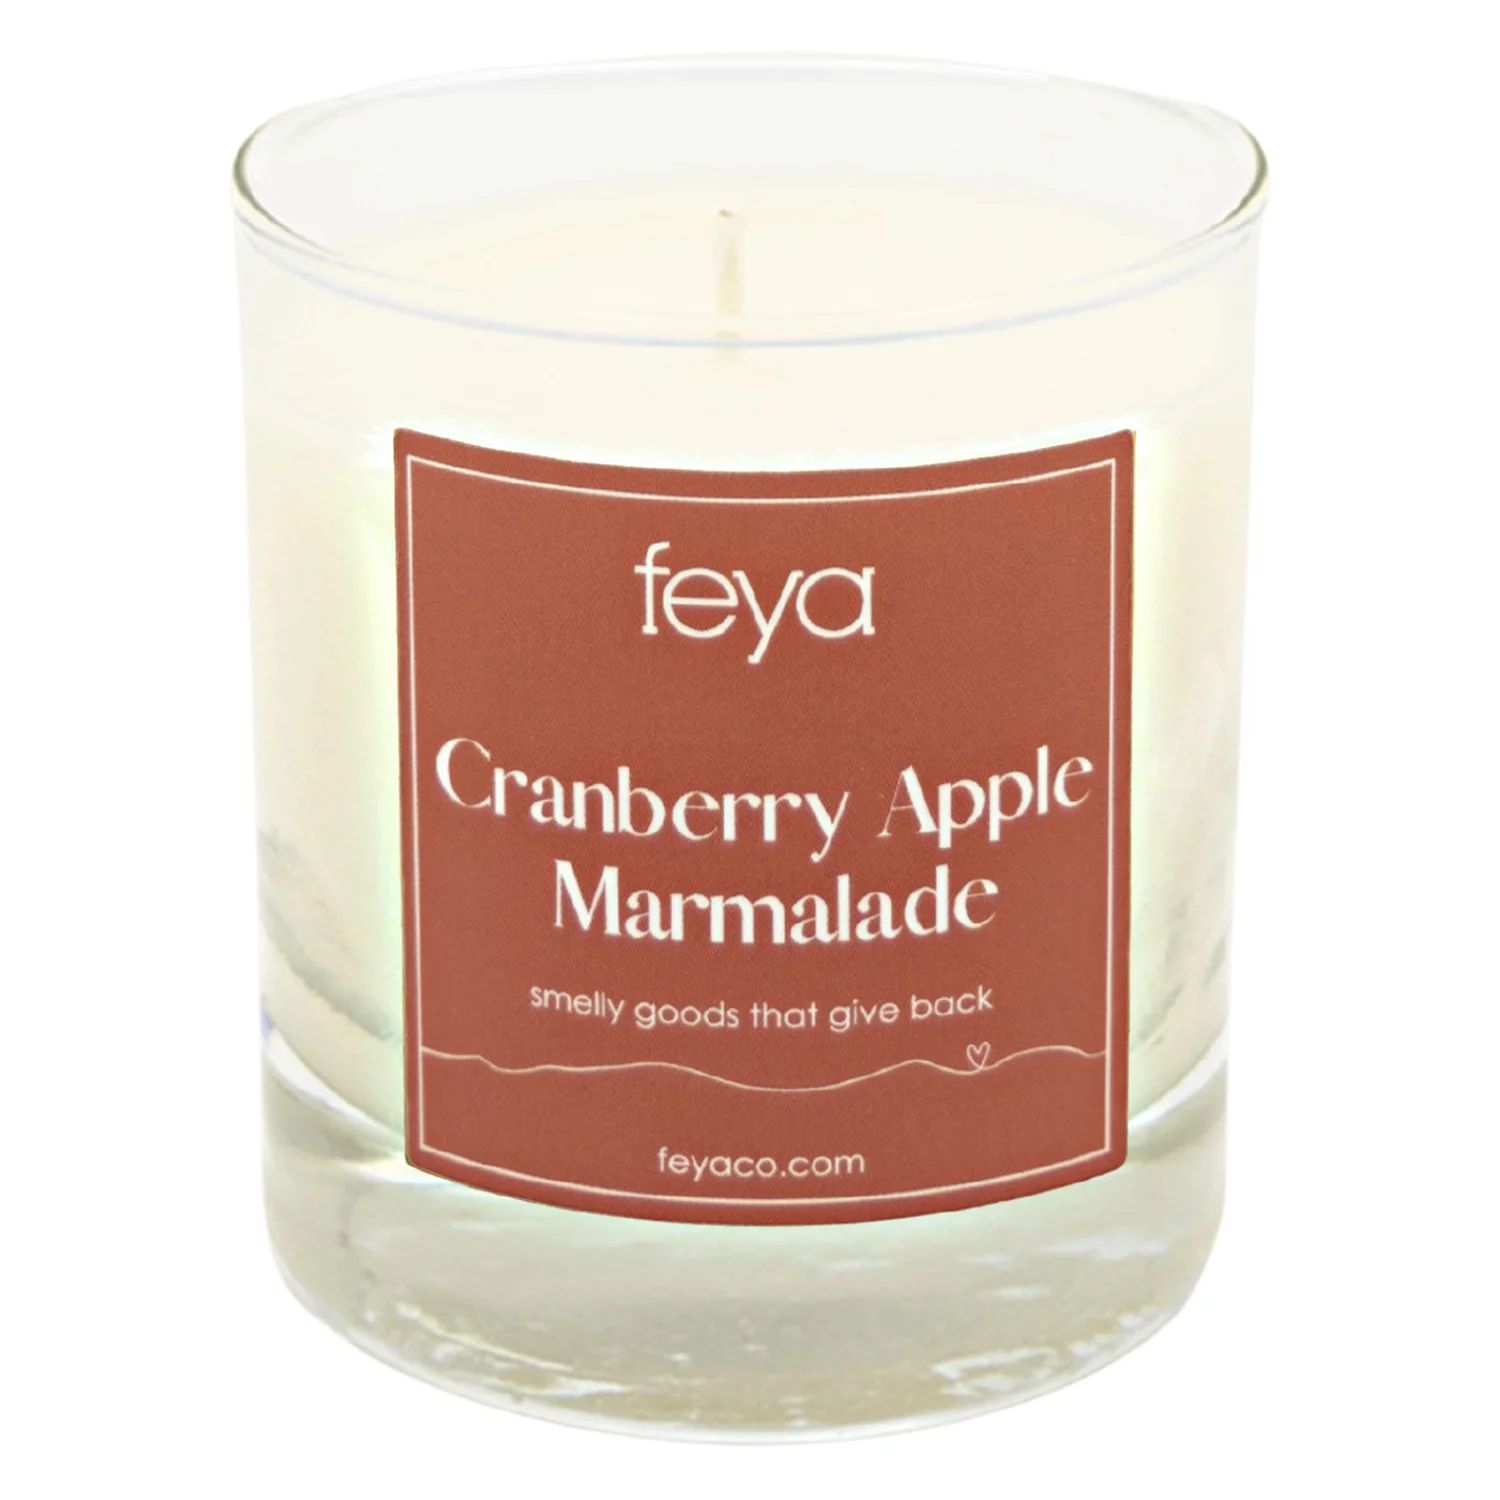 Feya Candle Клюквенно-яблочный мармелад, 6,5 унций. Соевая свеча свечи feya lavender 6 5 унций соевая восковая свеча